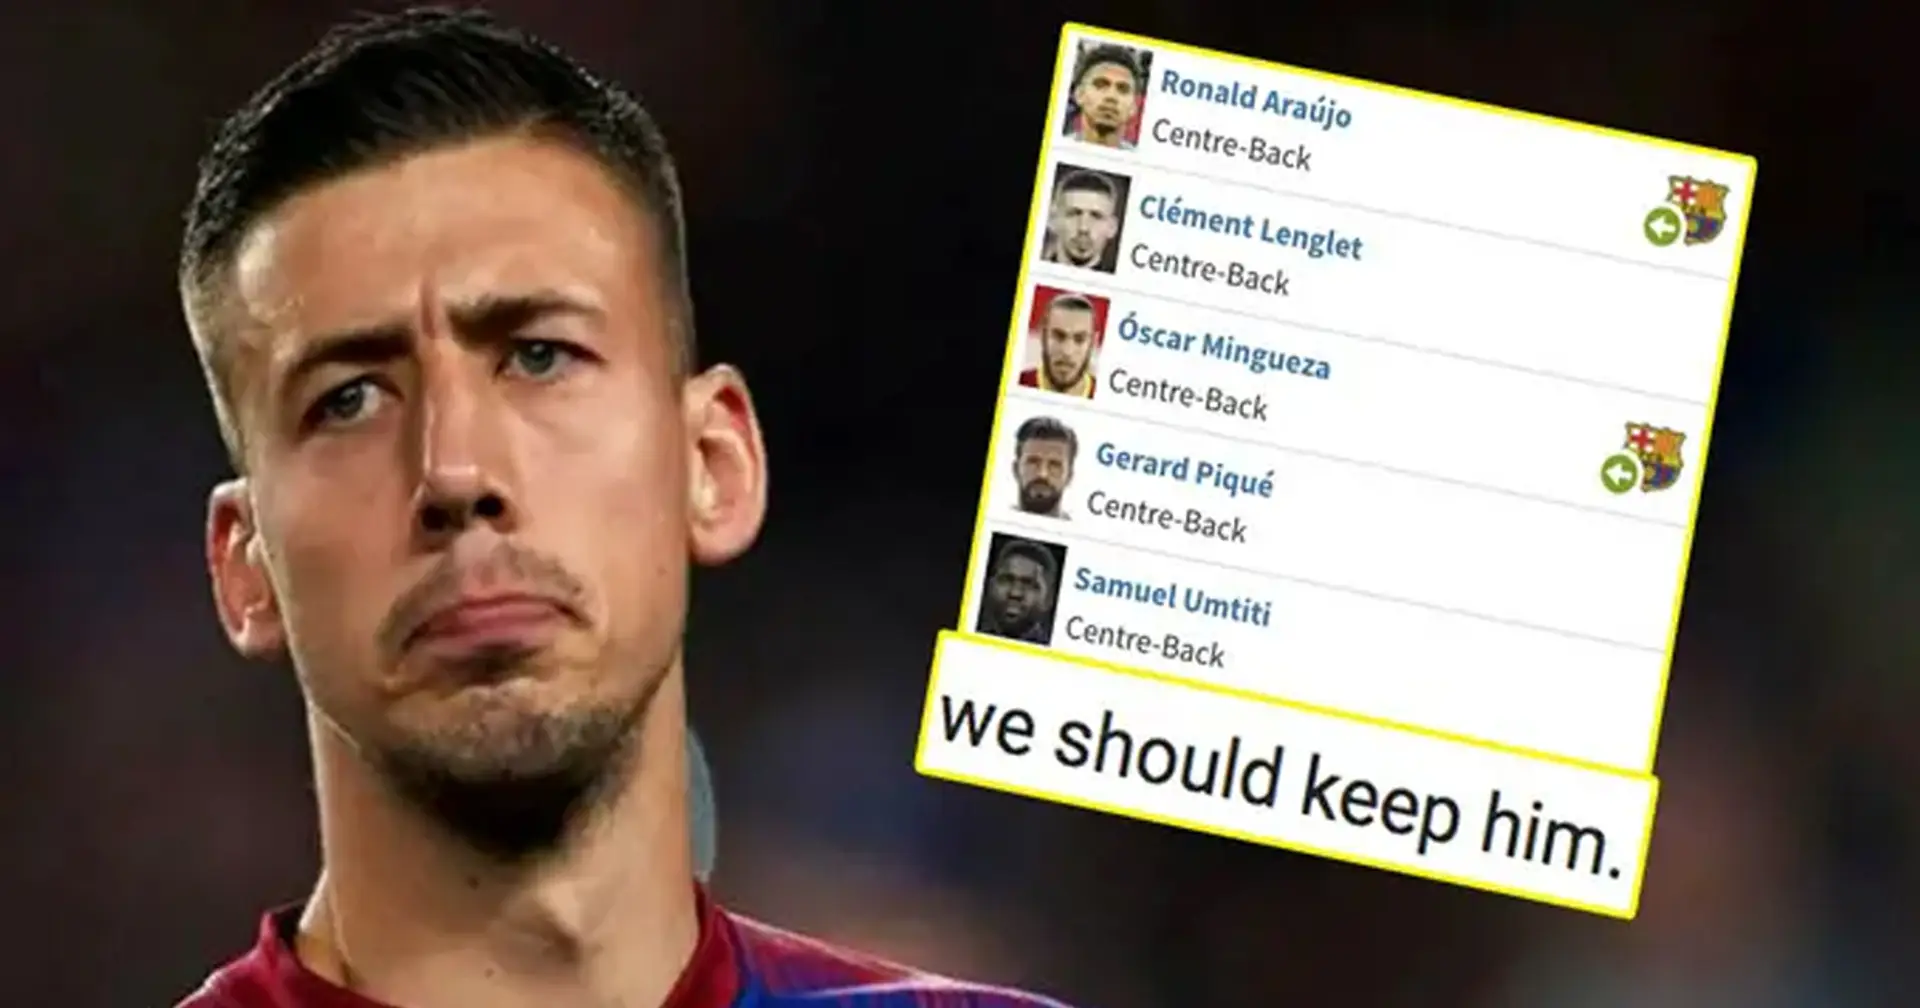 Fan menciona una condición por la que el Barça debería vender Lenglet: tiene mucho sentido